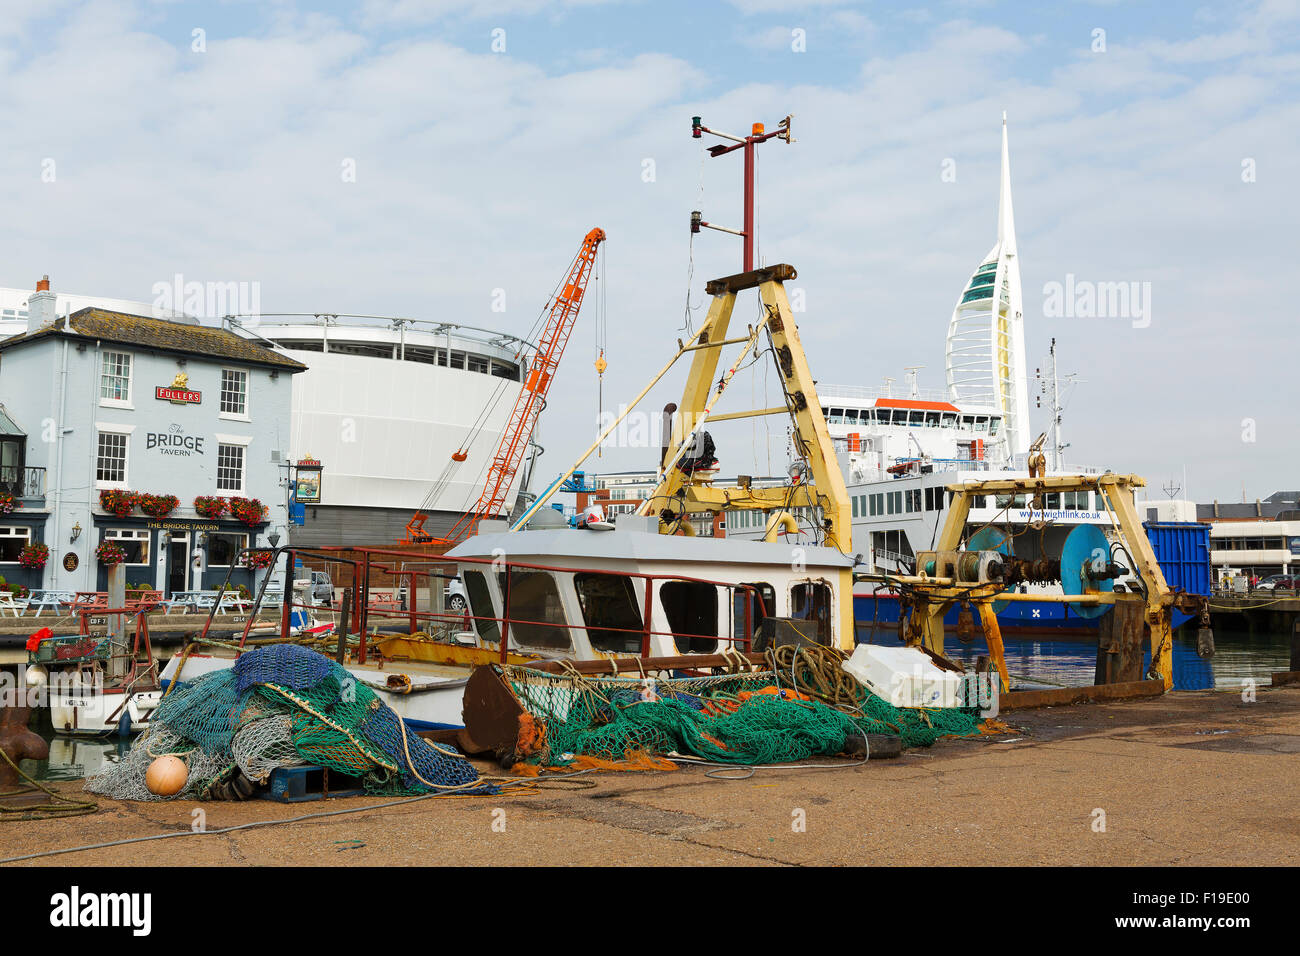 La campanatura docks un affollato porto di pesca situato su spice island in old Portsmouth. Foto Stock